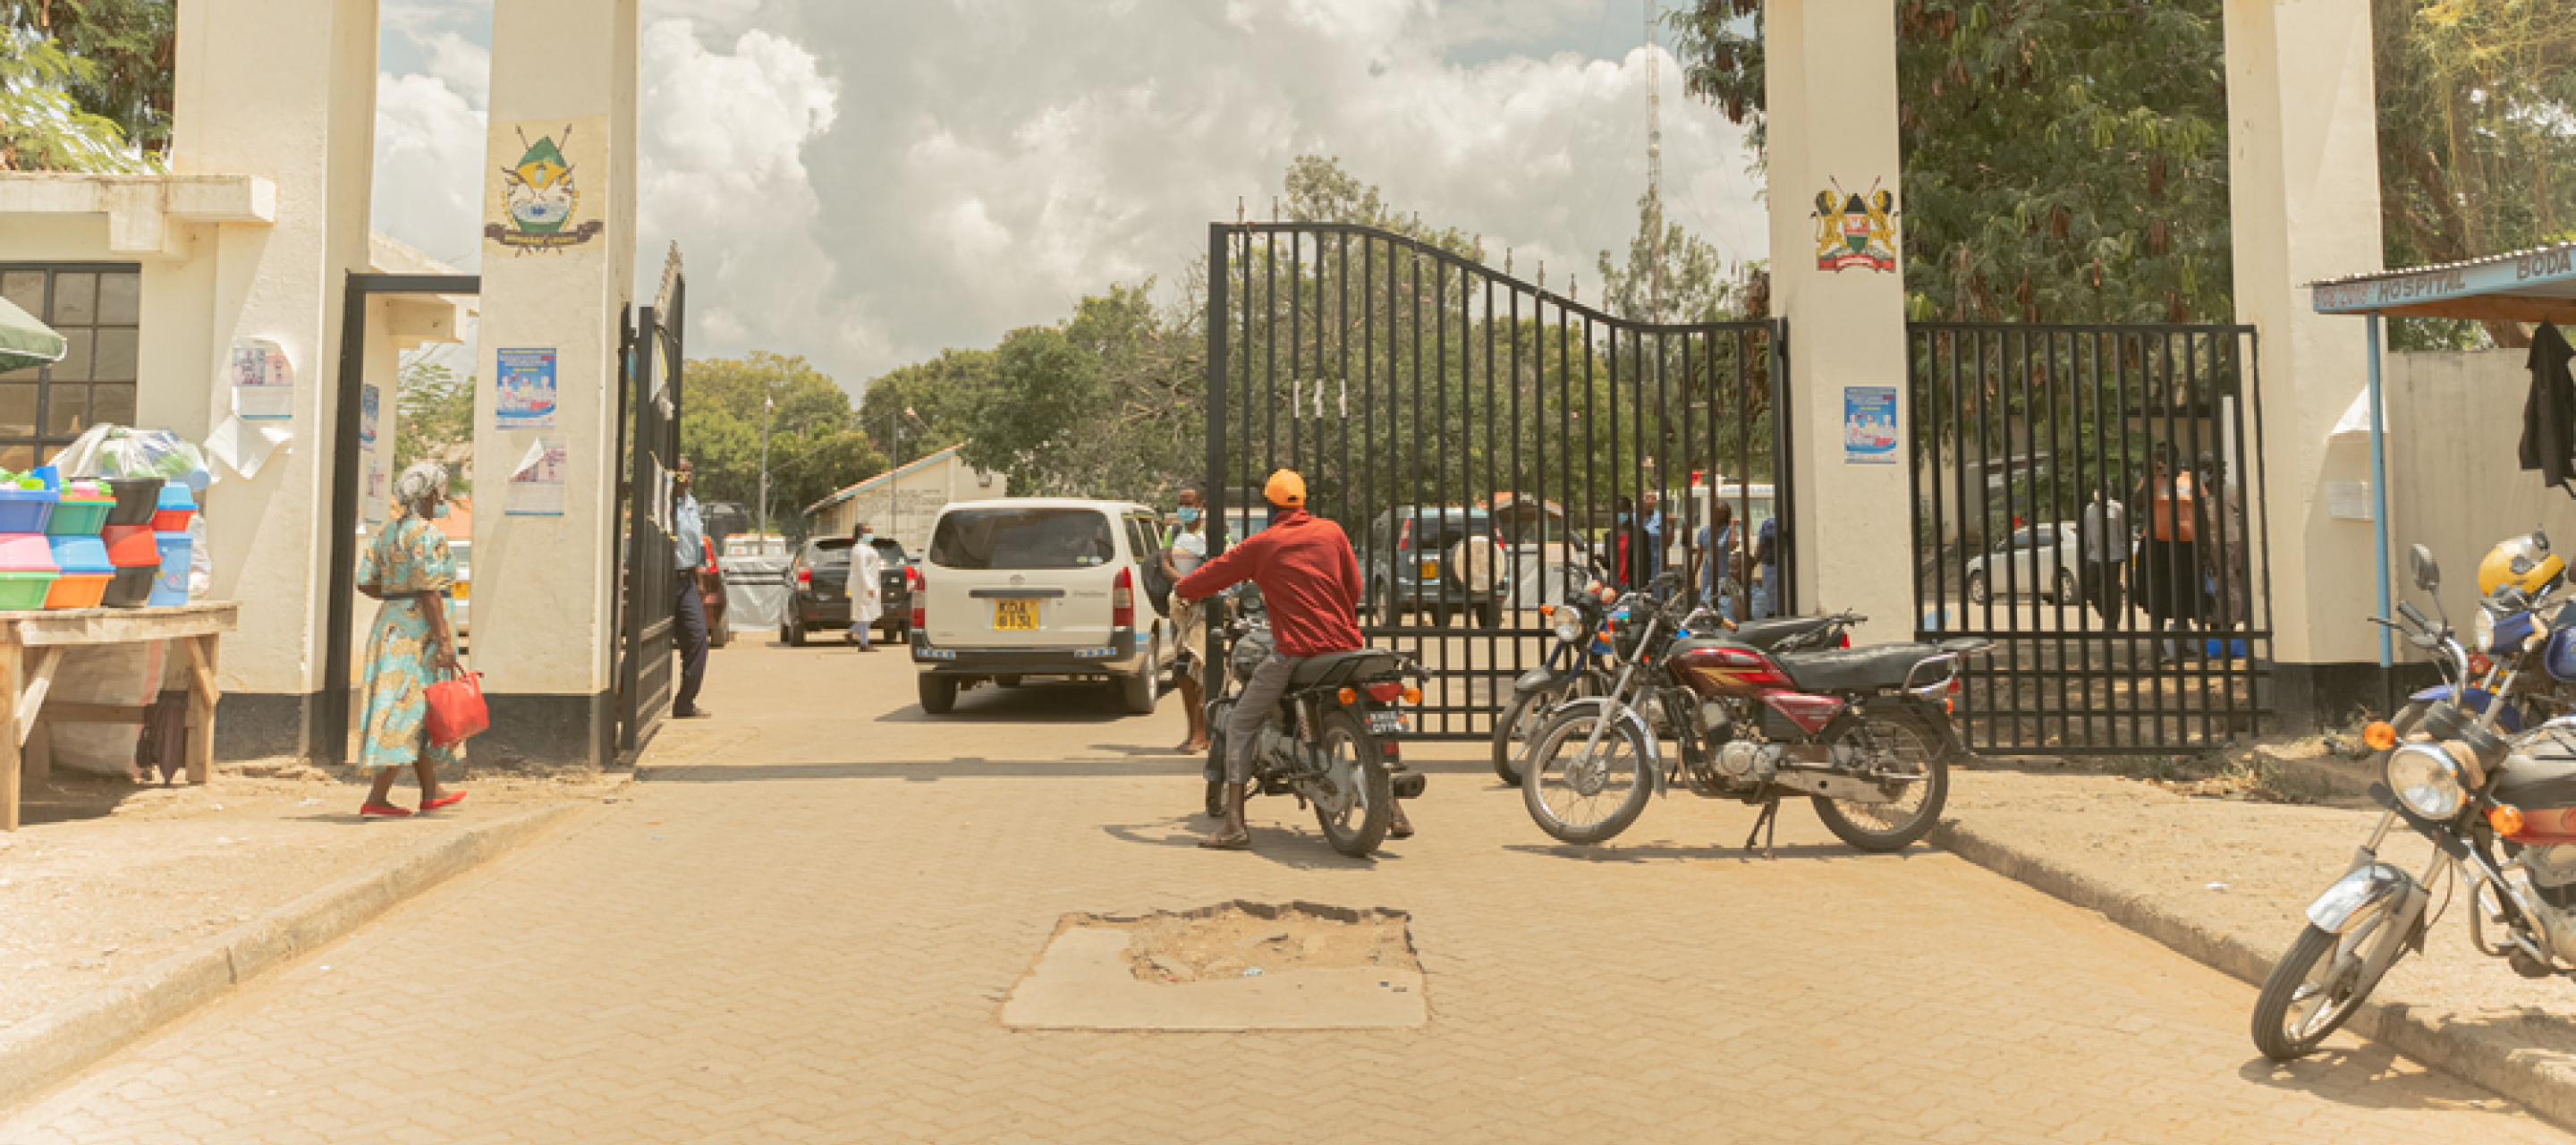 Der Eingang des Krankenhauses in Homa Bay, Kenia.